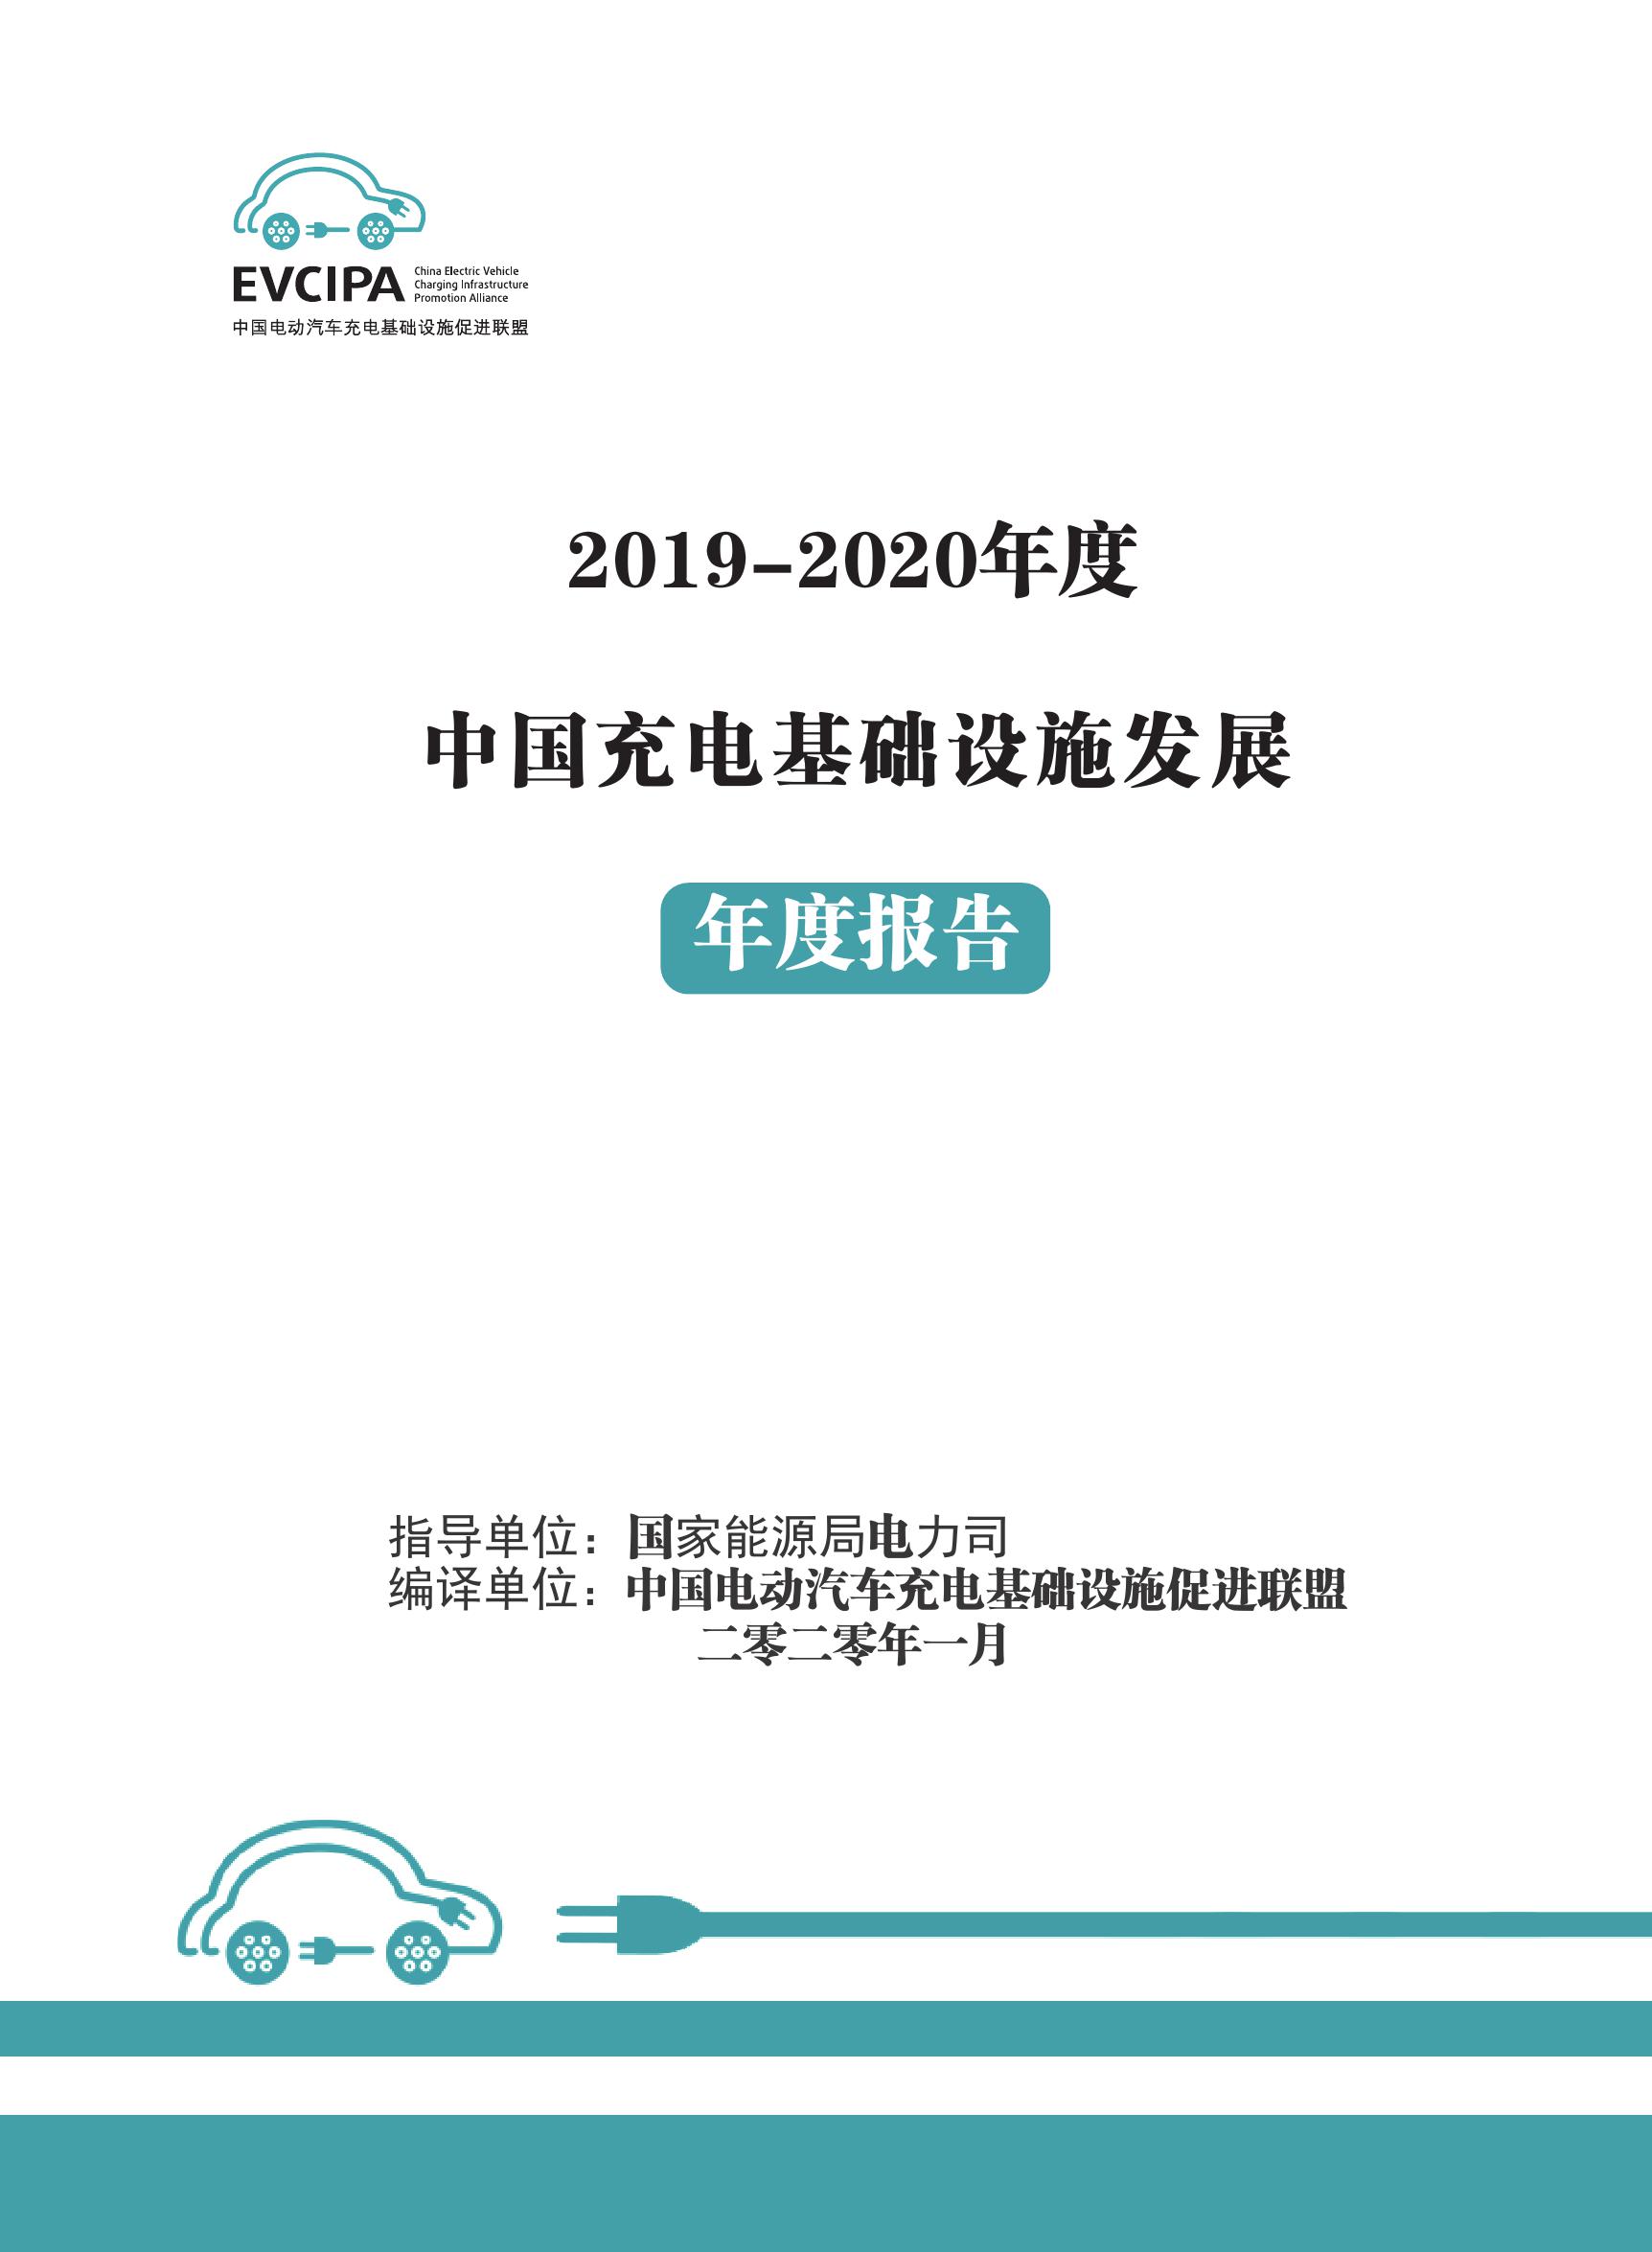 2019-2020年度中国充电基础设施发展报告_000001.jpg